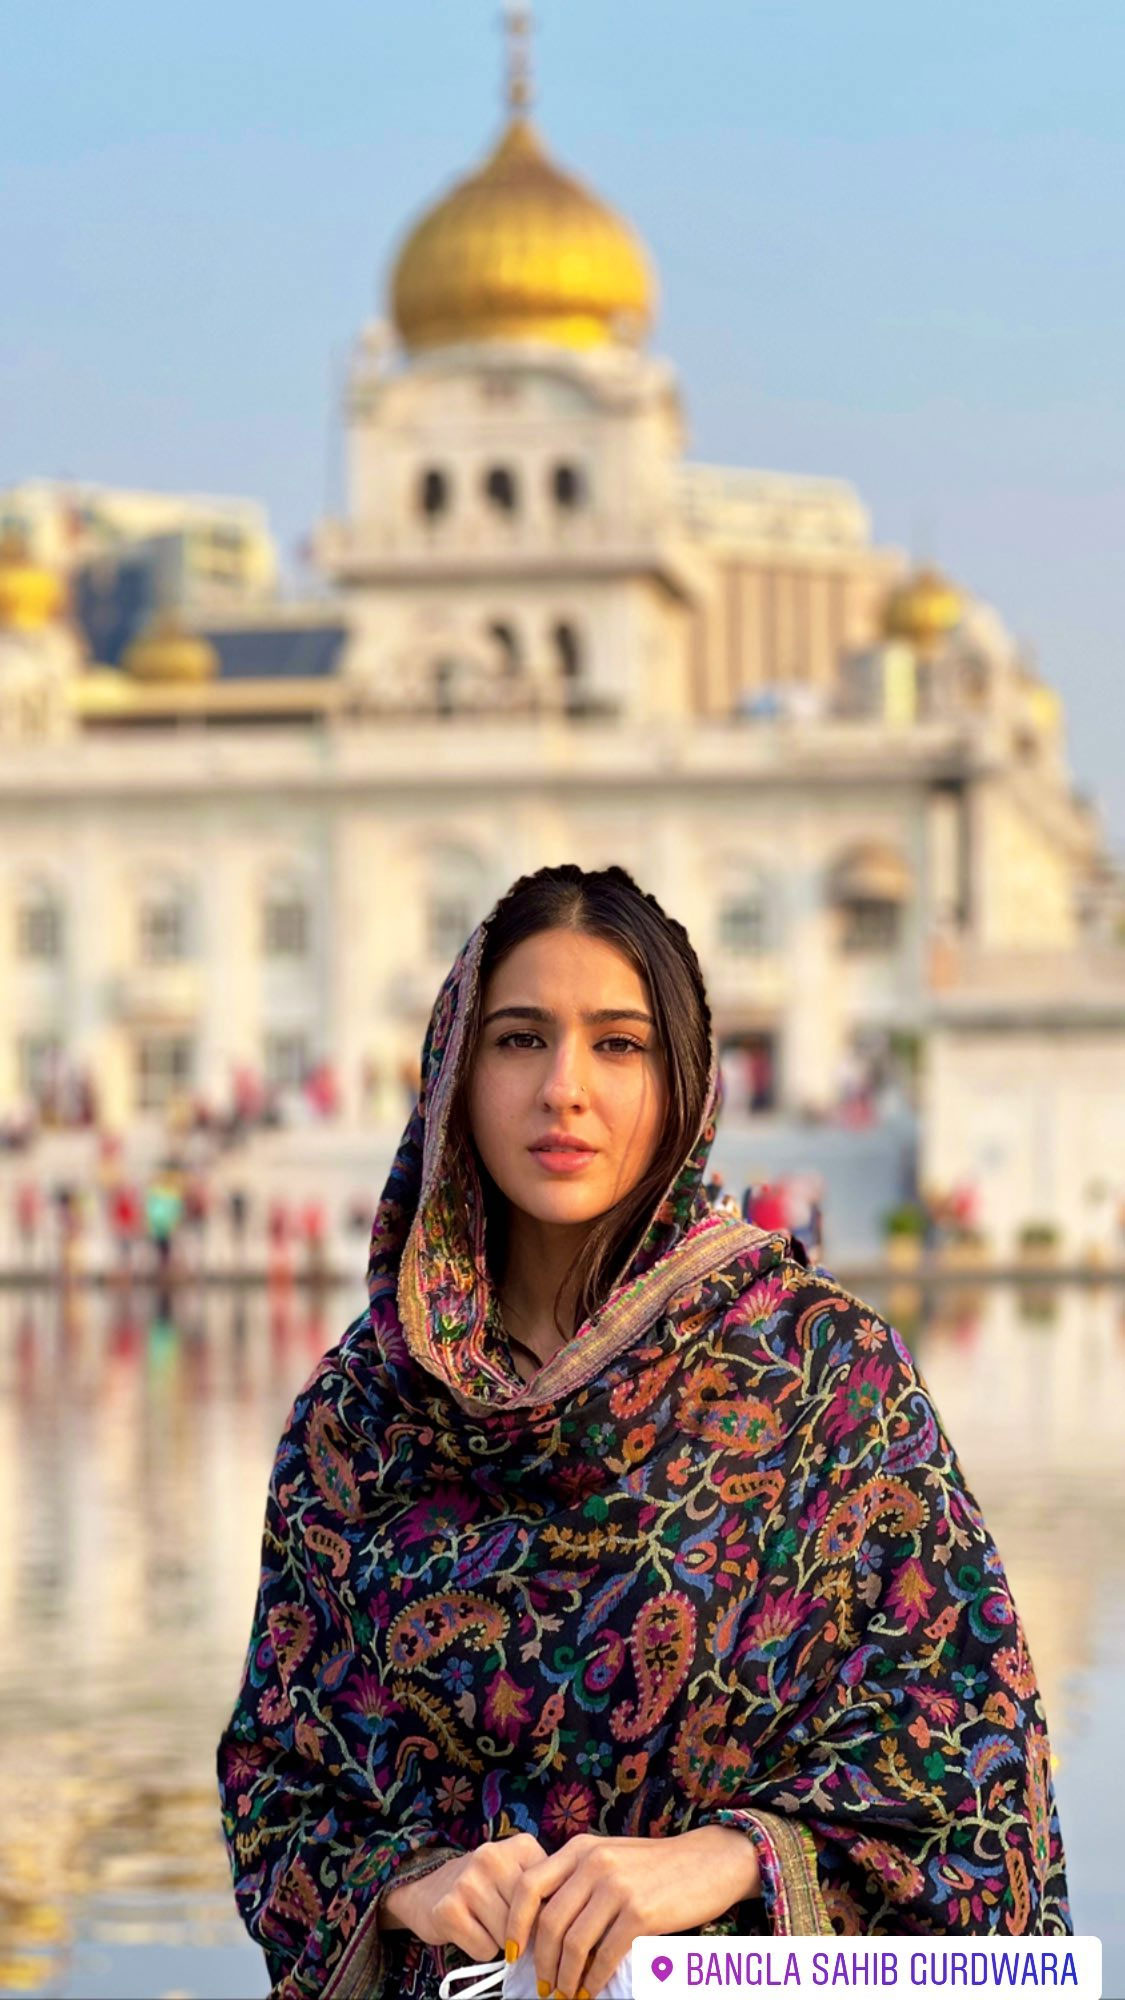 سارہ علی خان نے اپنی فلم کی ریلیز سے قبل سکھوں کے مذہبی مقام کا بھی دورہ کیا— فوٹو: سارہ علی خان انسٹاگرام